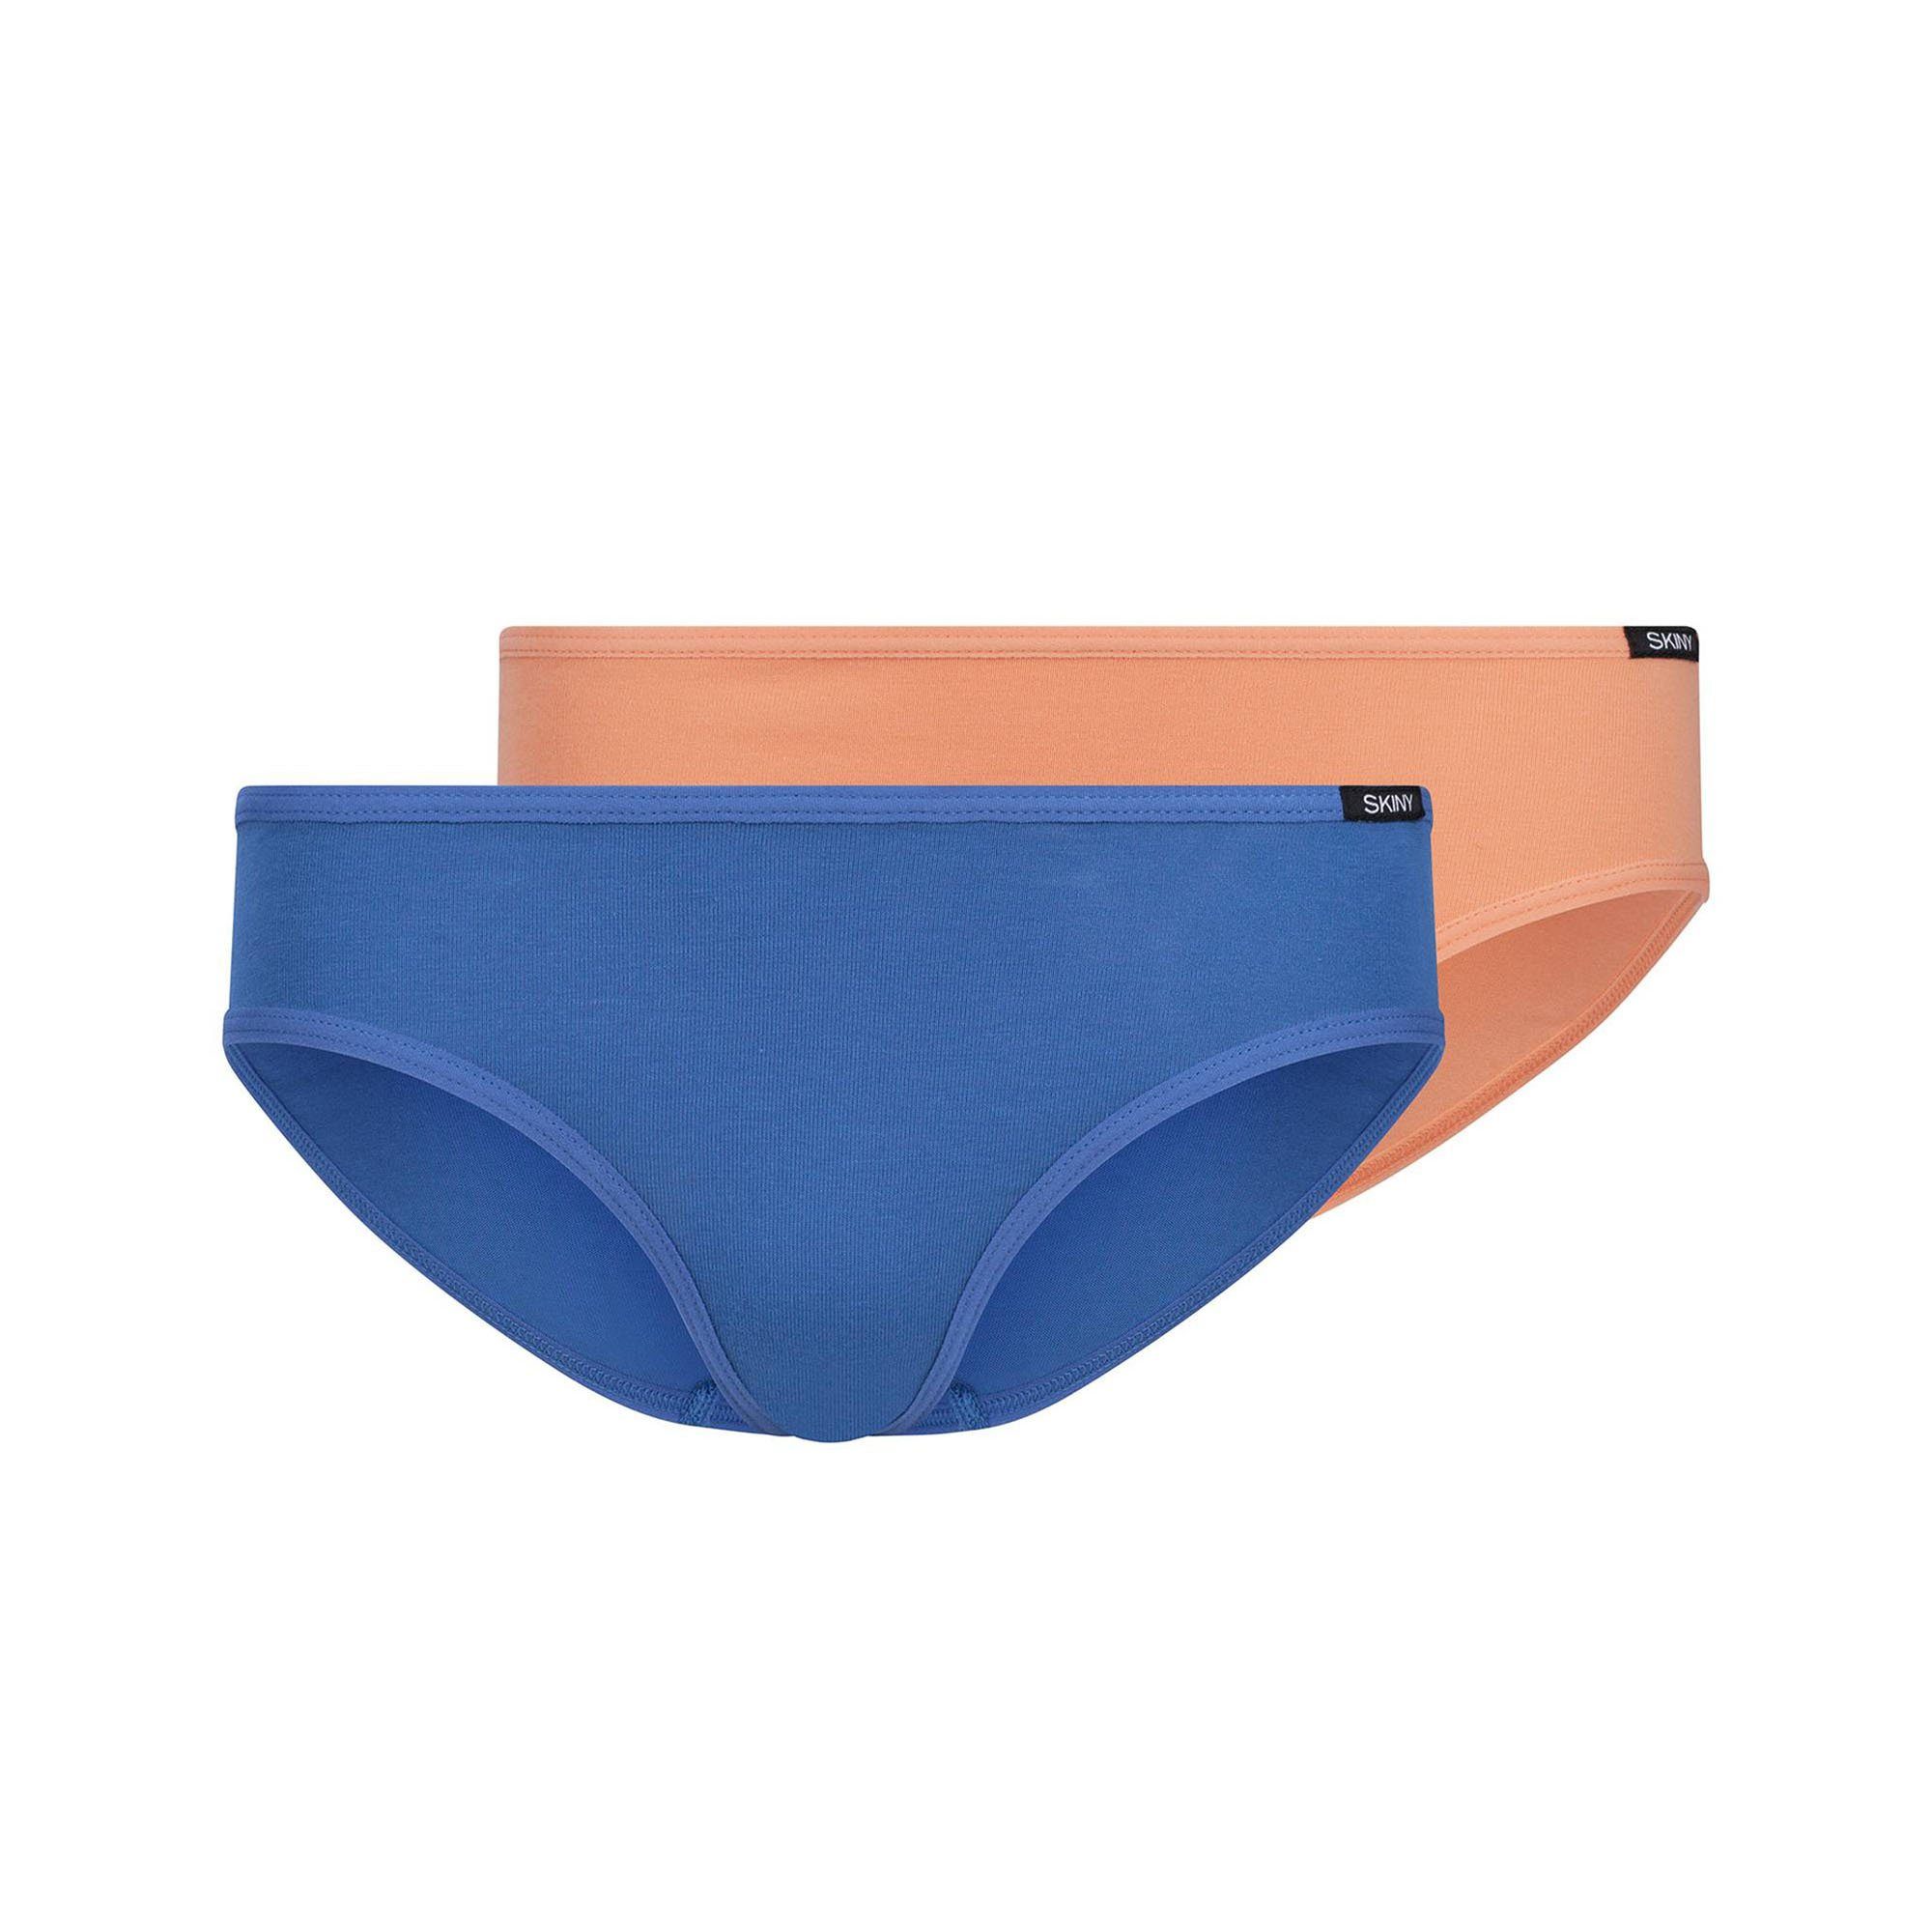 Slip, 2er Blau/Orange Briefs Slip - Mädchen Rio-Slip, Skiny Bikini Pack